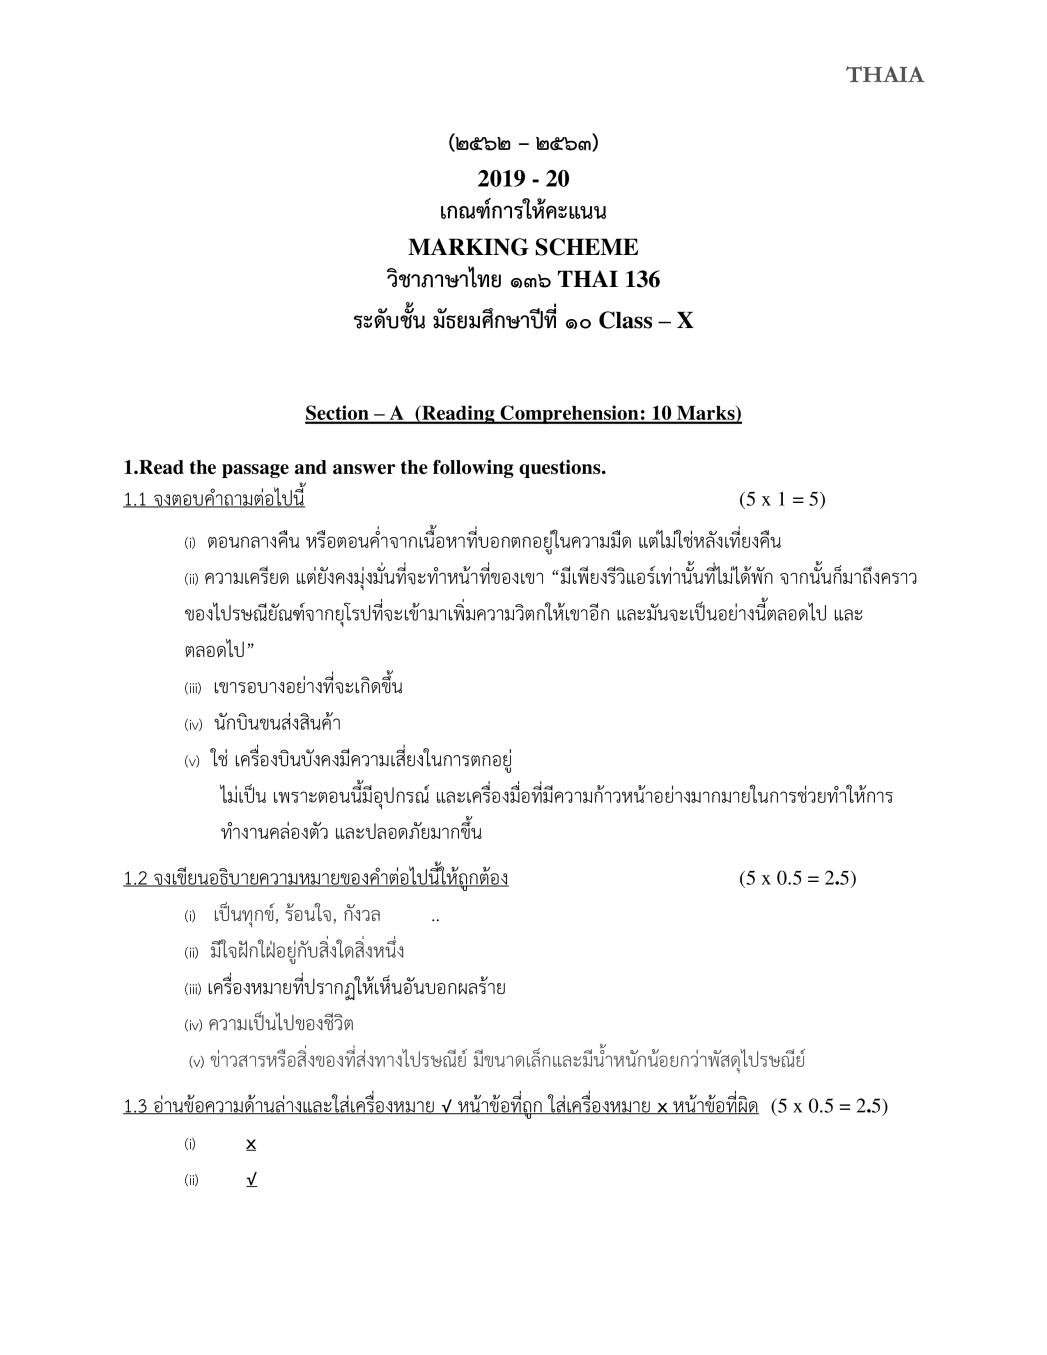 CBSE Class 10 Marking Scheme 2020 for Thai - Page 1